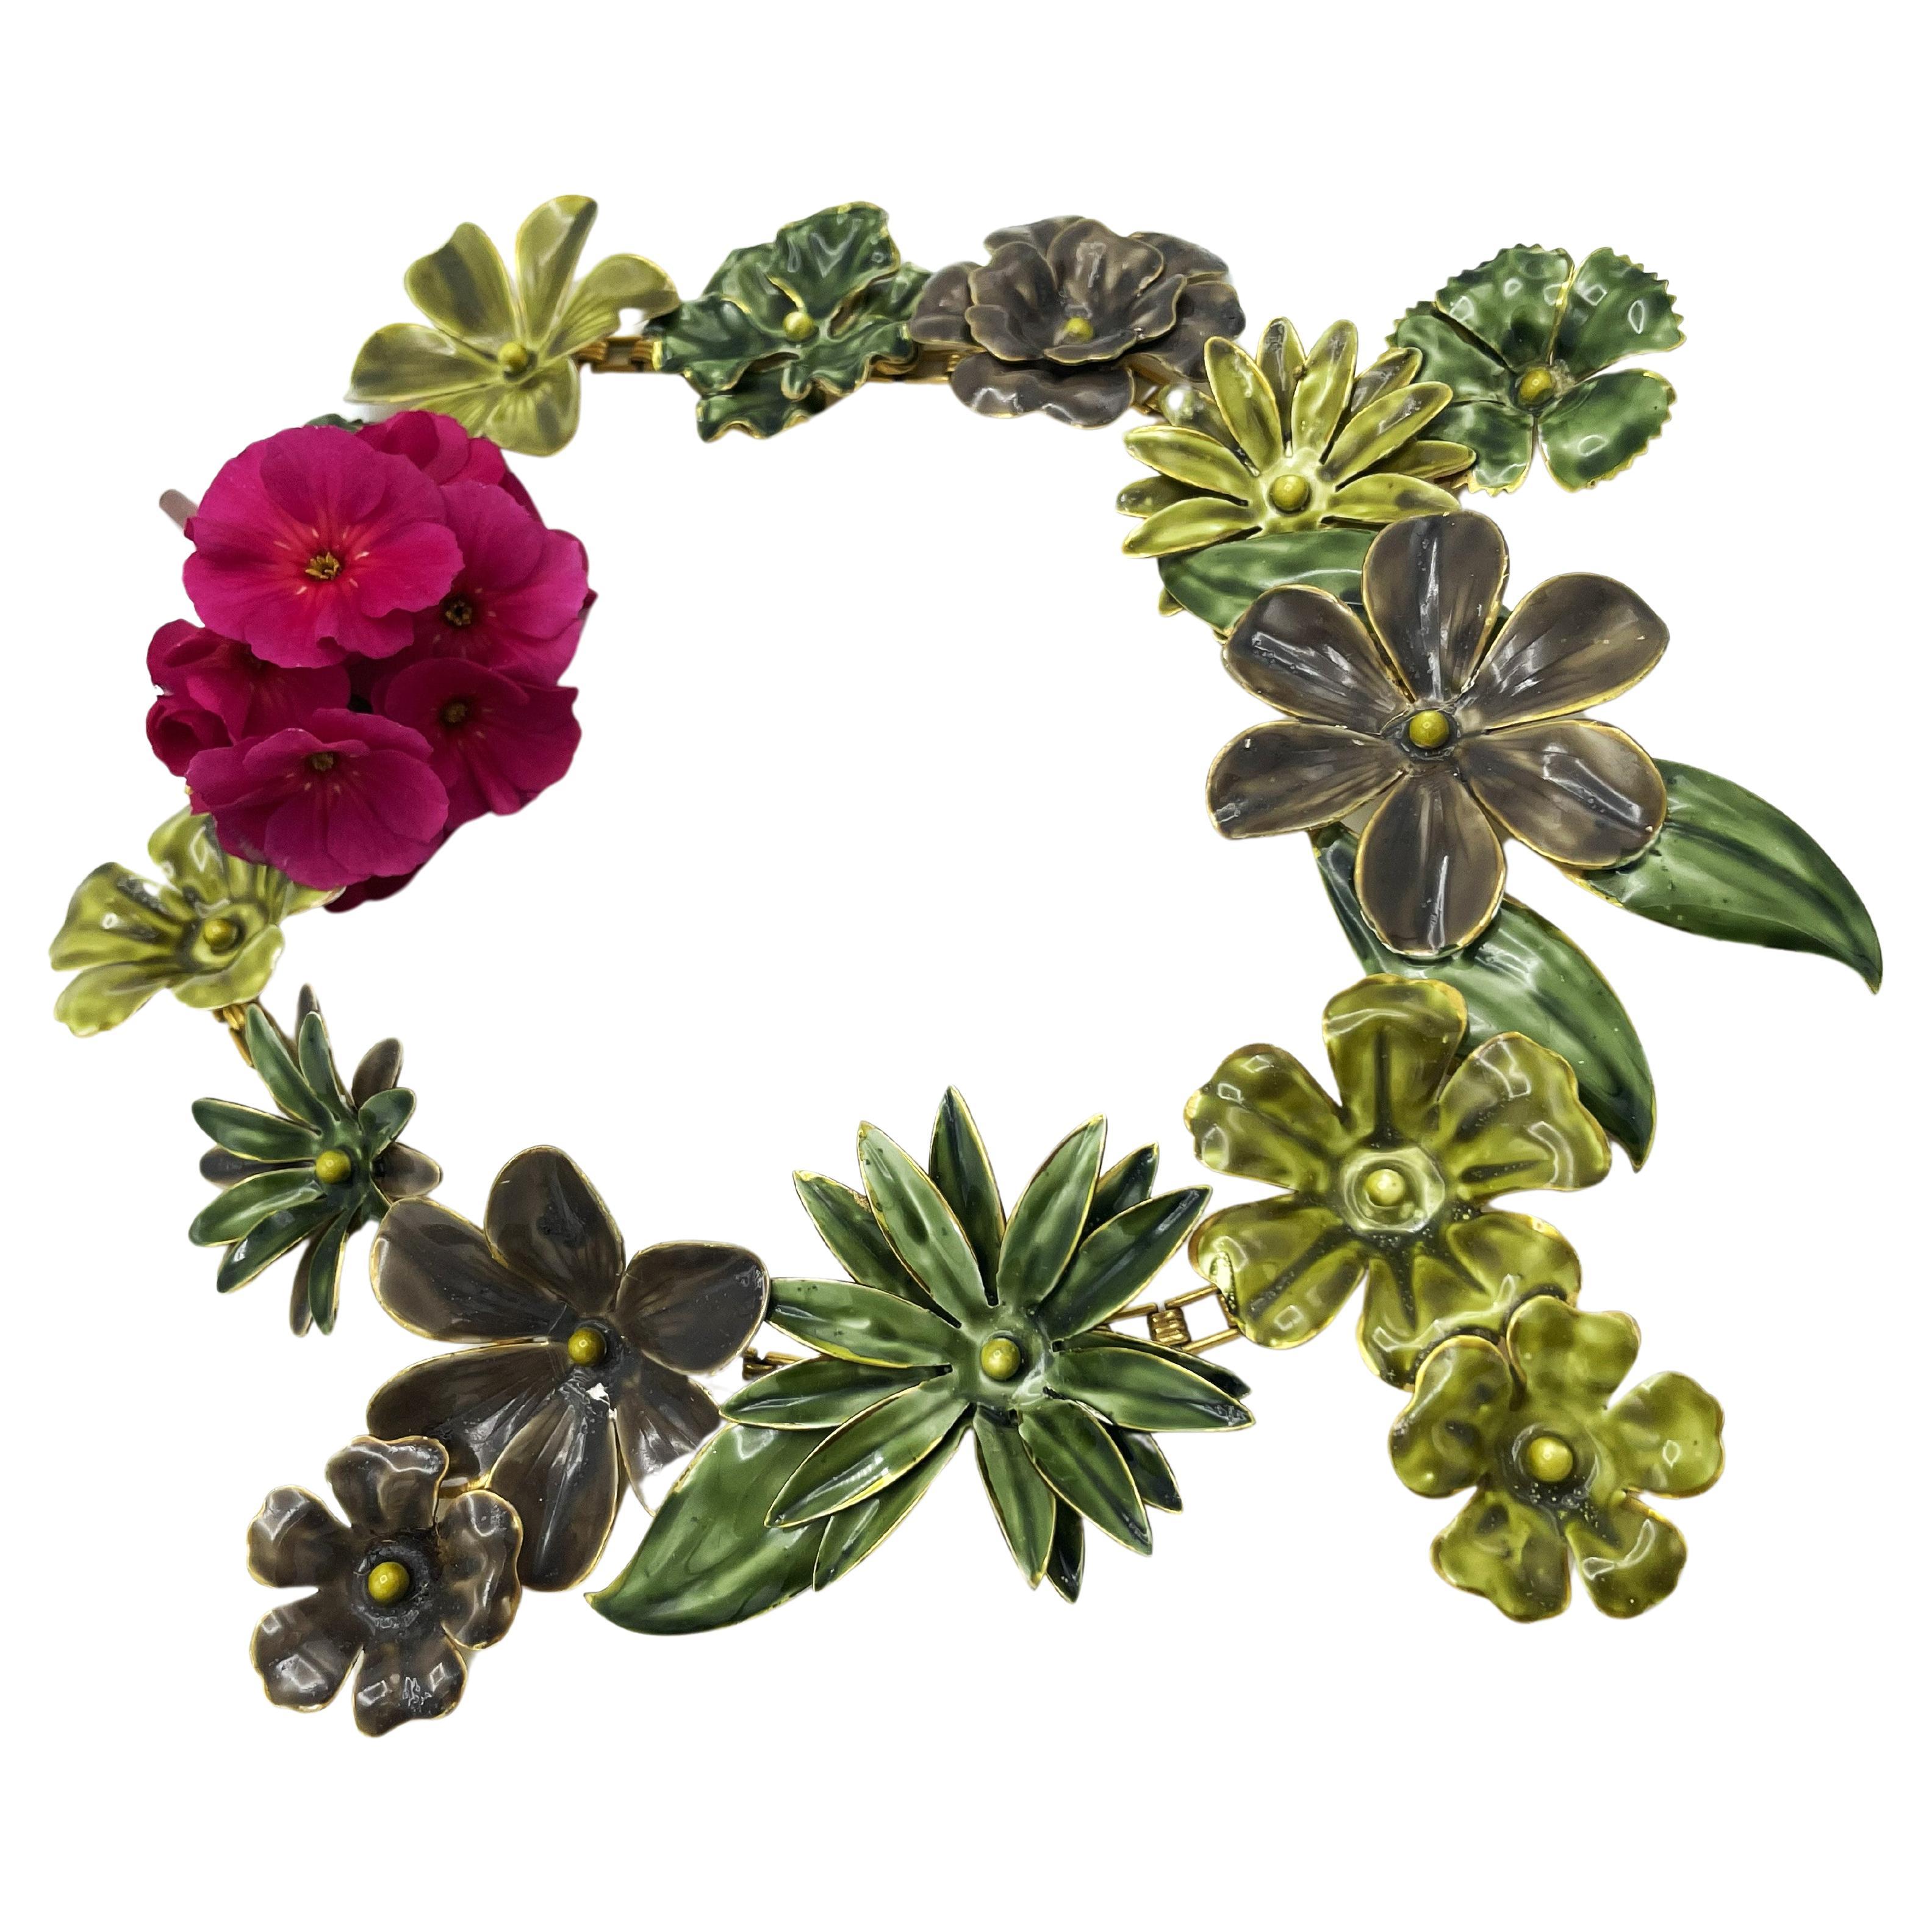 Un grand collier de fleurs et de feuilles en métal émaillé à la main, conçu par Sandor dans les années 1940, avec un clip d'oreille assorti en forme de fleur, datant des années 1940.
Sandor a fabriqué des bijoux artisanaux de haute qualité de la fin